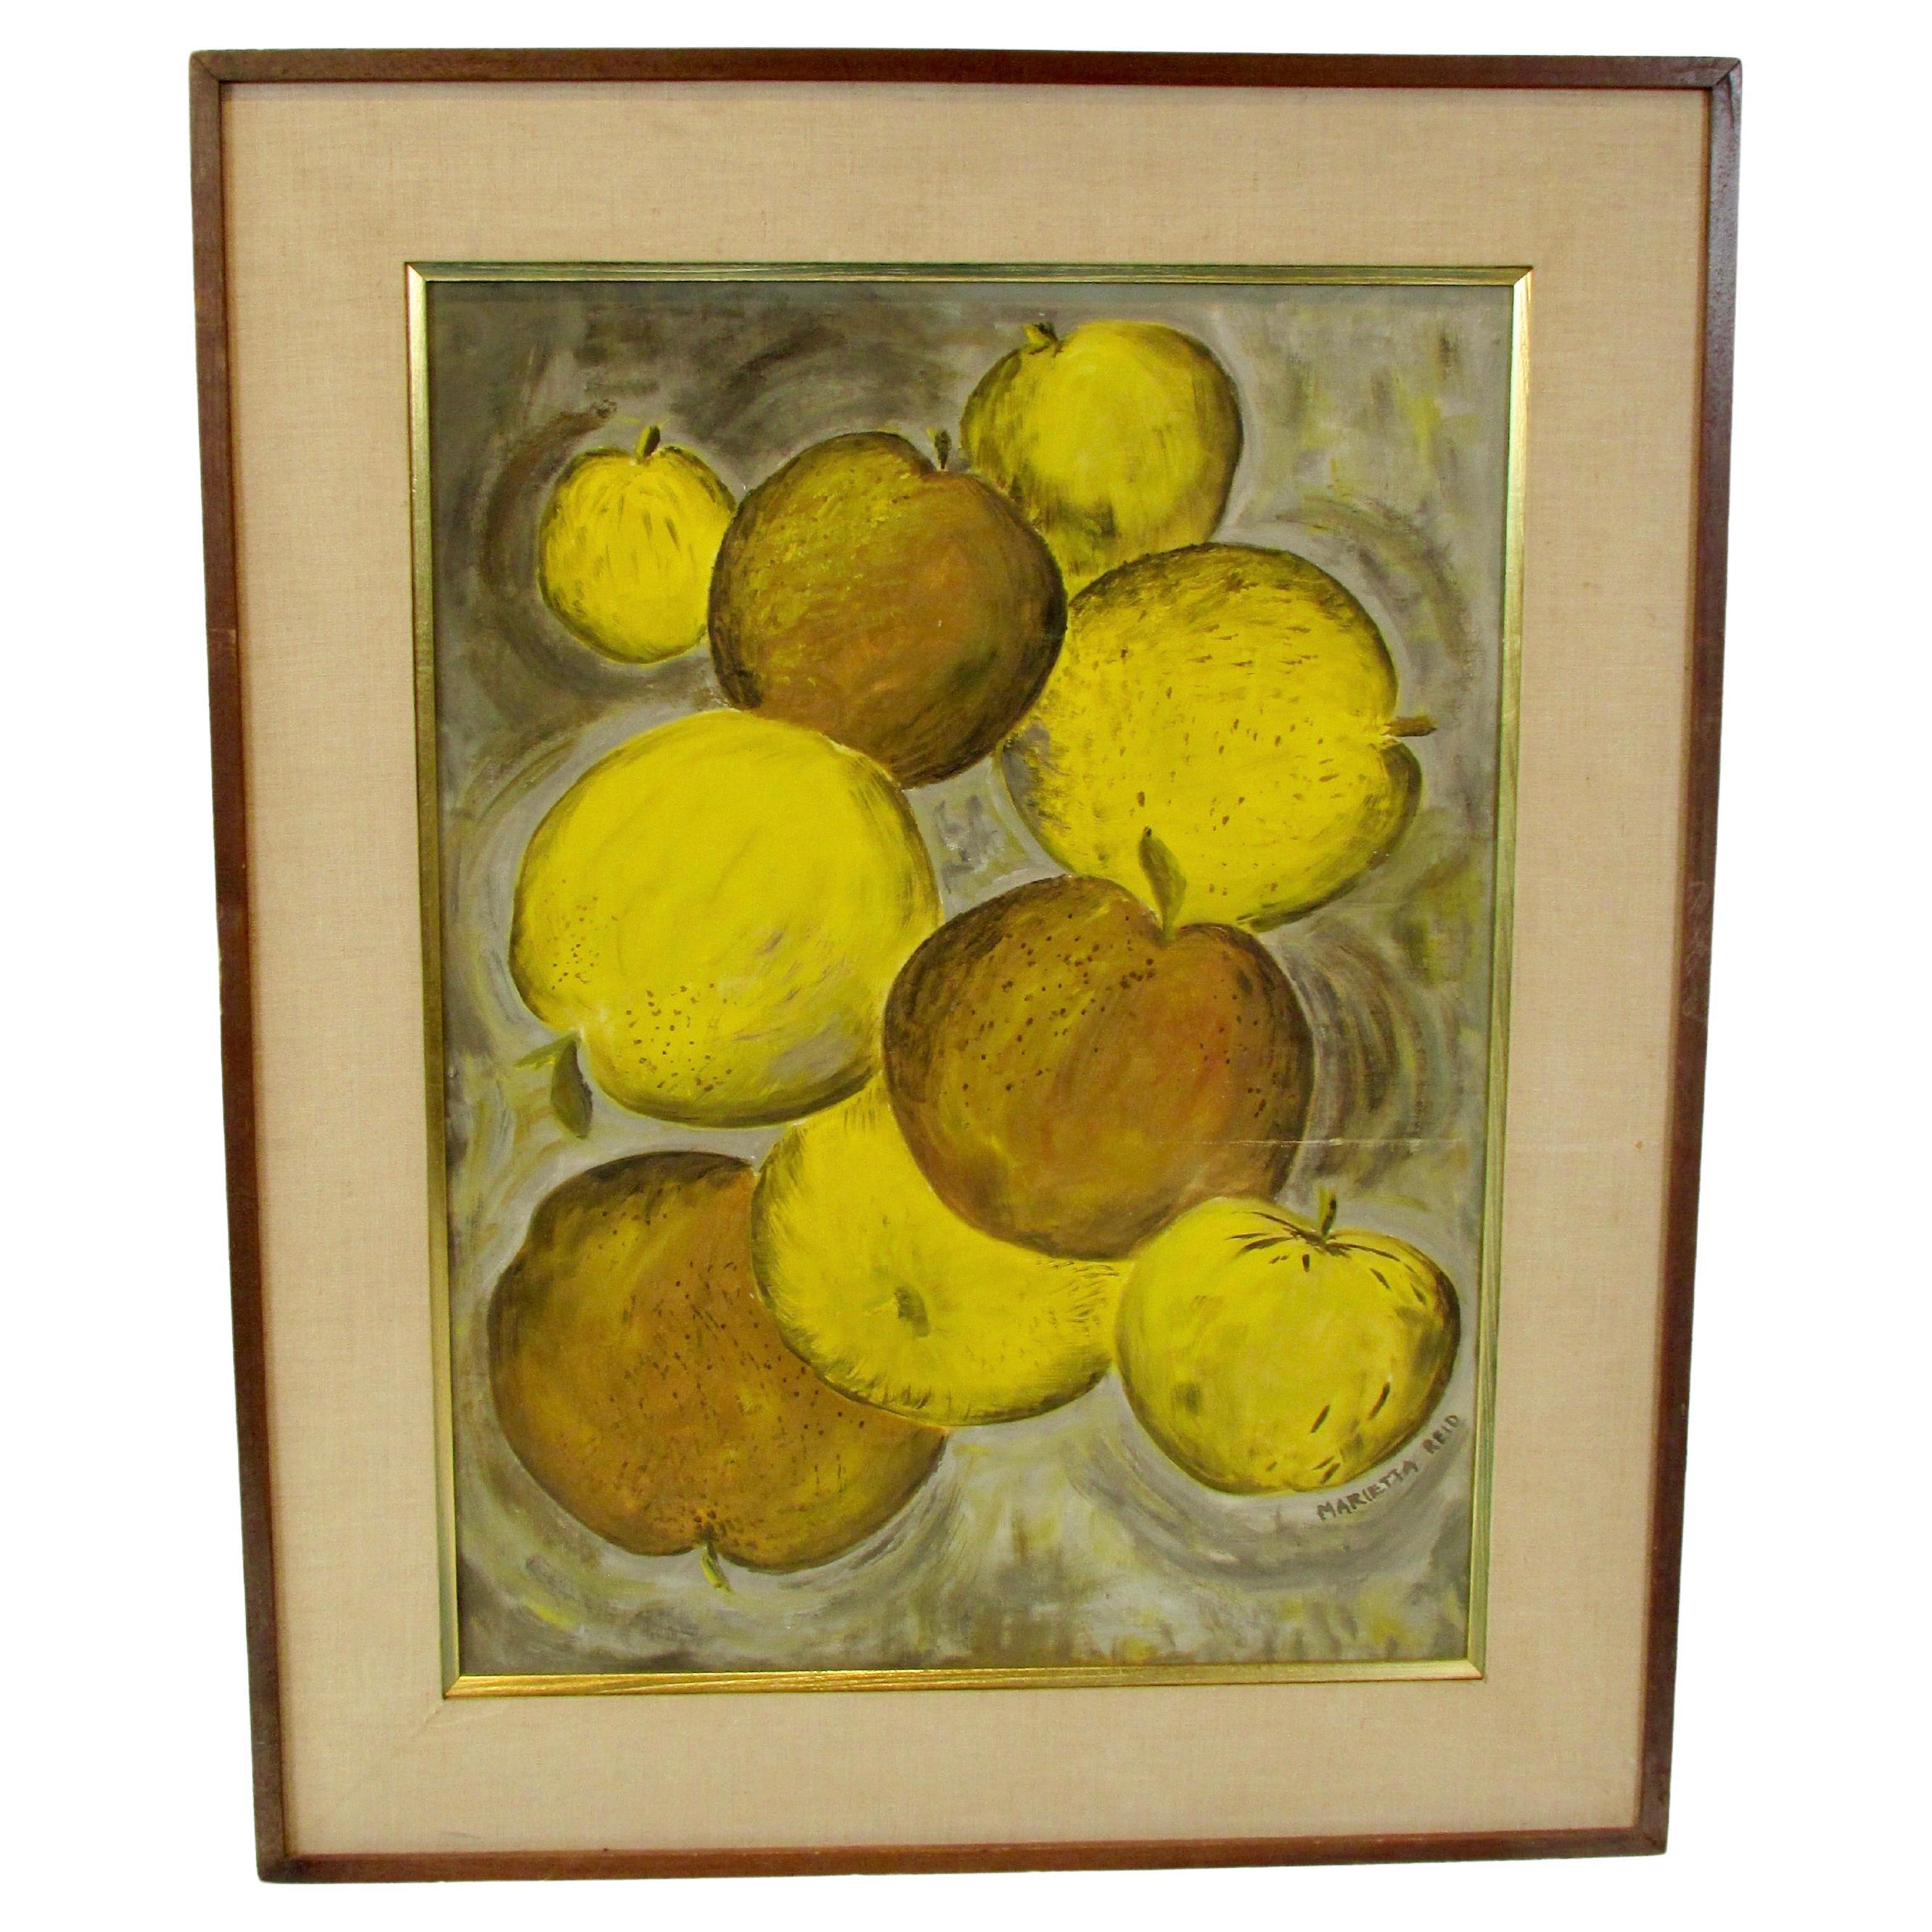 Peinture à l'huile sur panneau - Fruits en relief - L'artiste de Détroit Marietta Reid